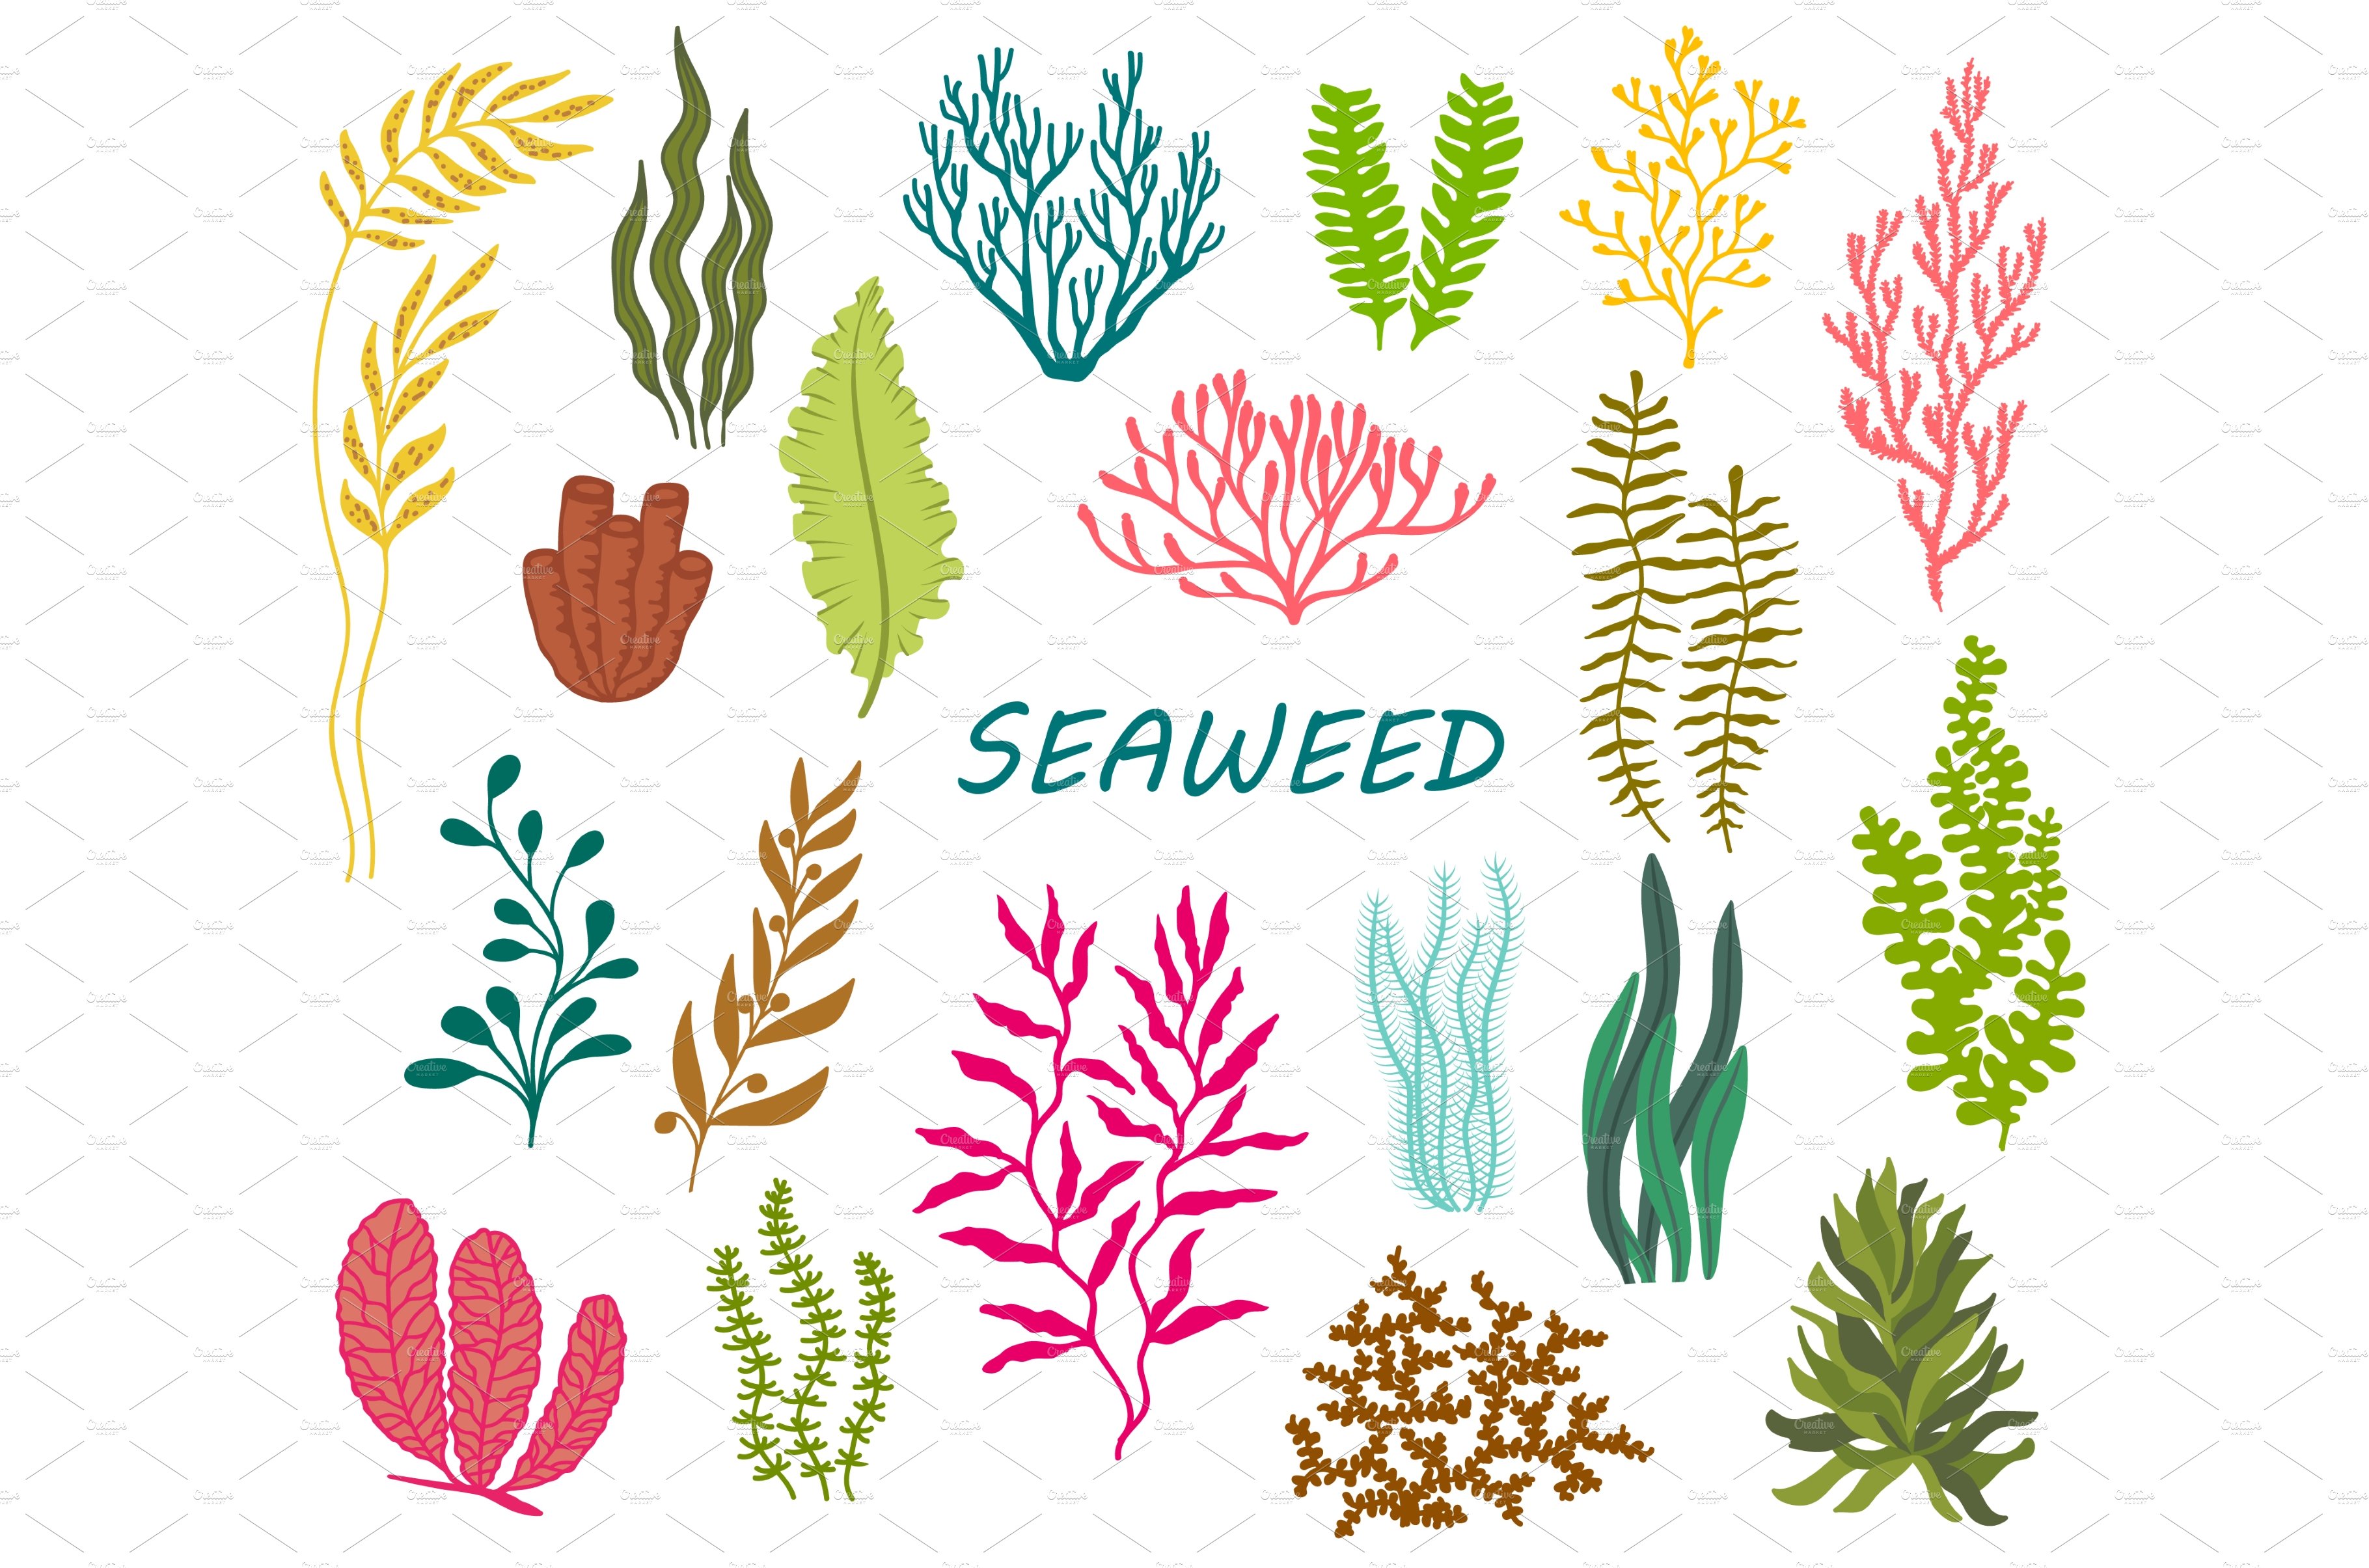 Underwater seaweed, coral reef cover image.